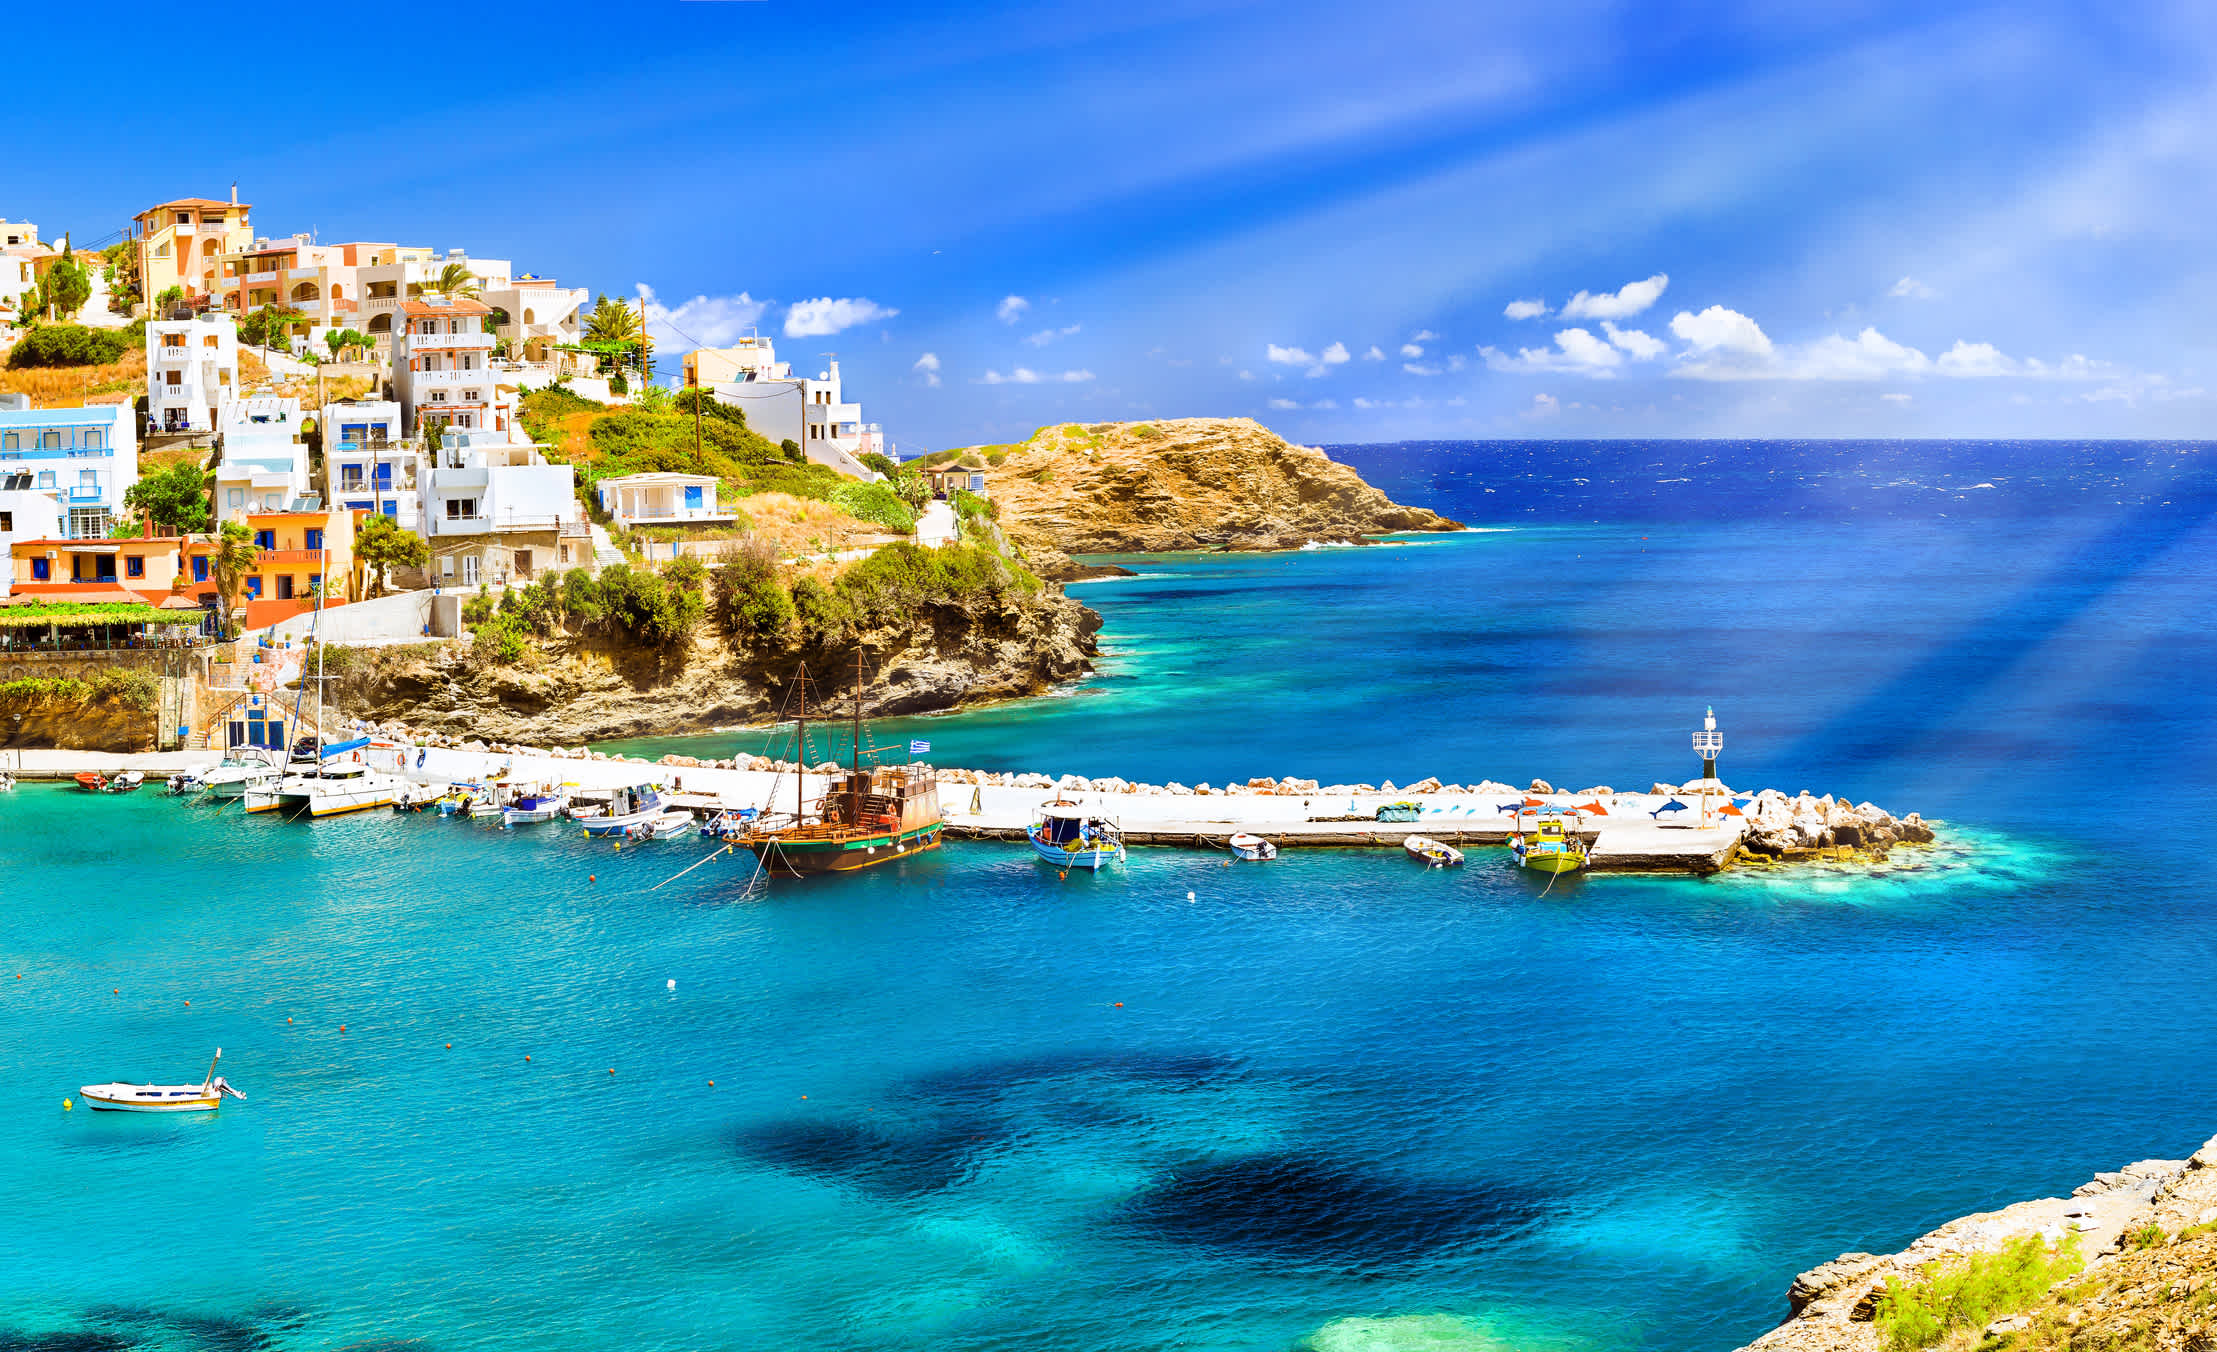 Eine idyllische Bucht auf Kreta mit kristallklarem Wasser und bunten Häuser entlang der Küste